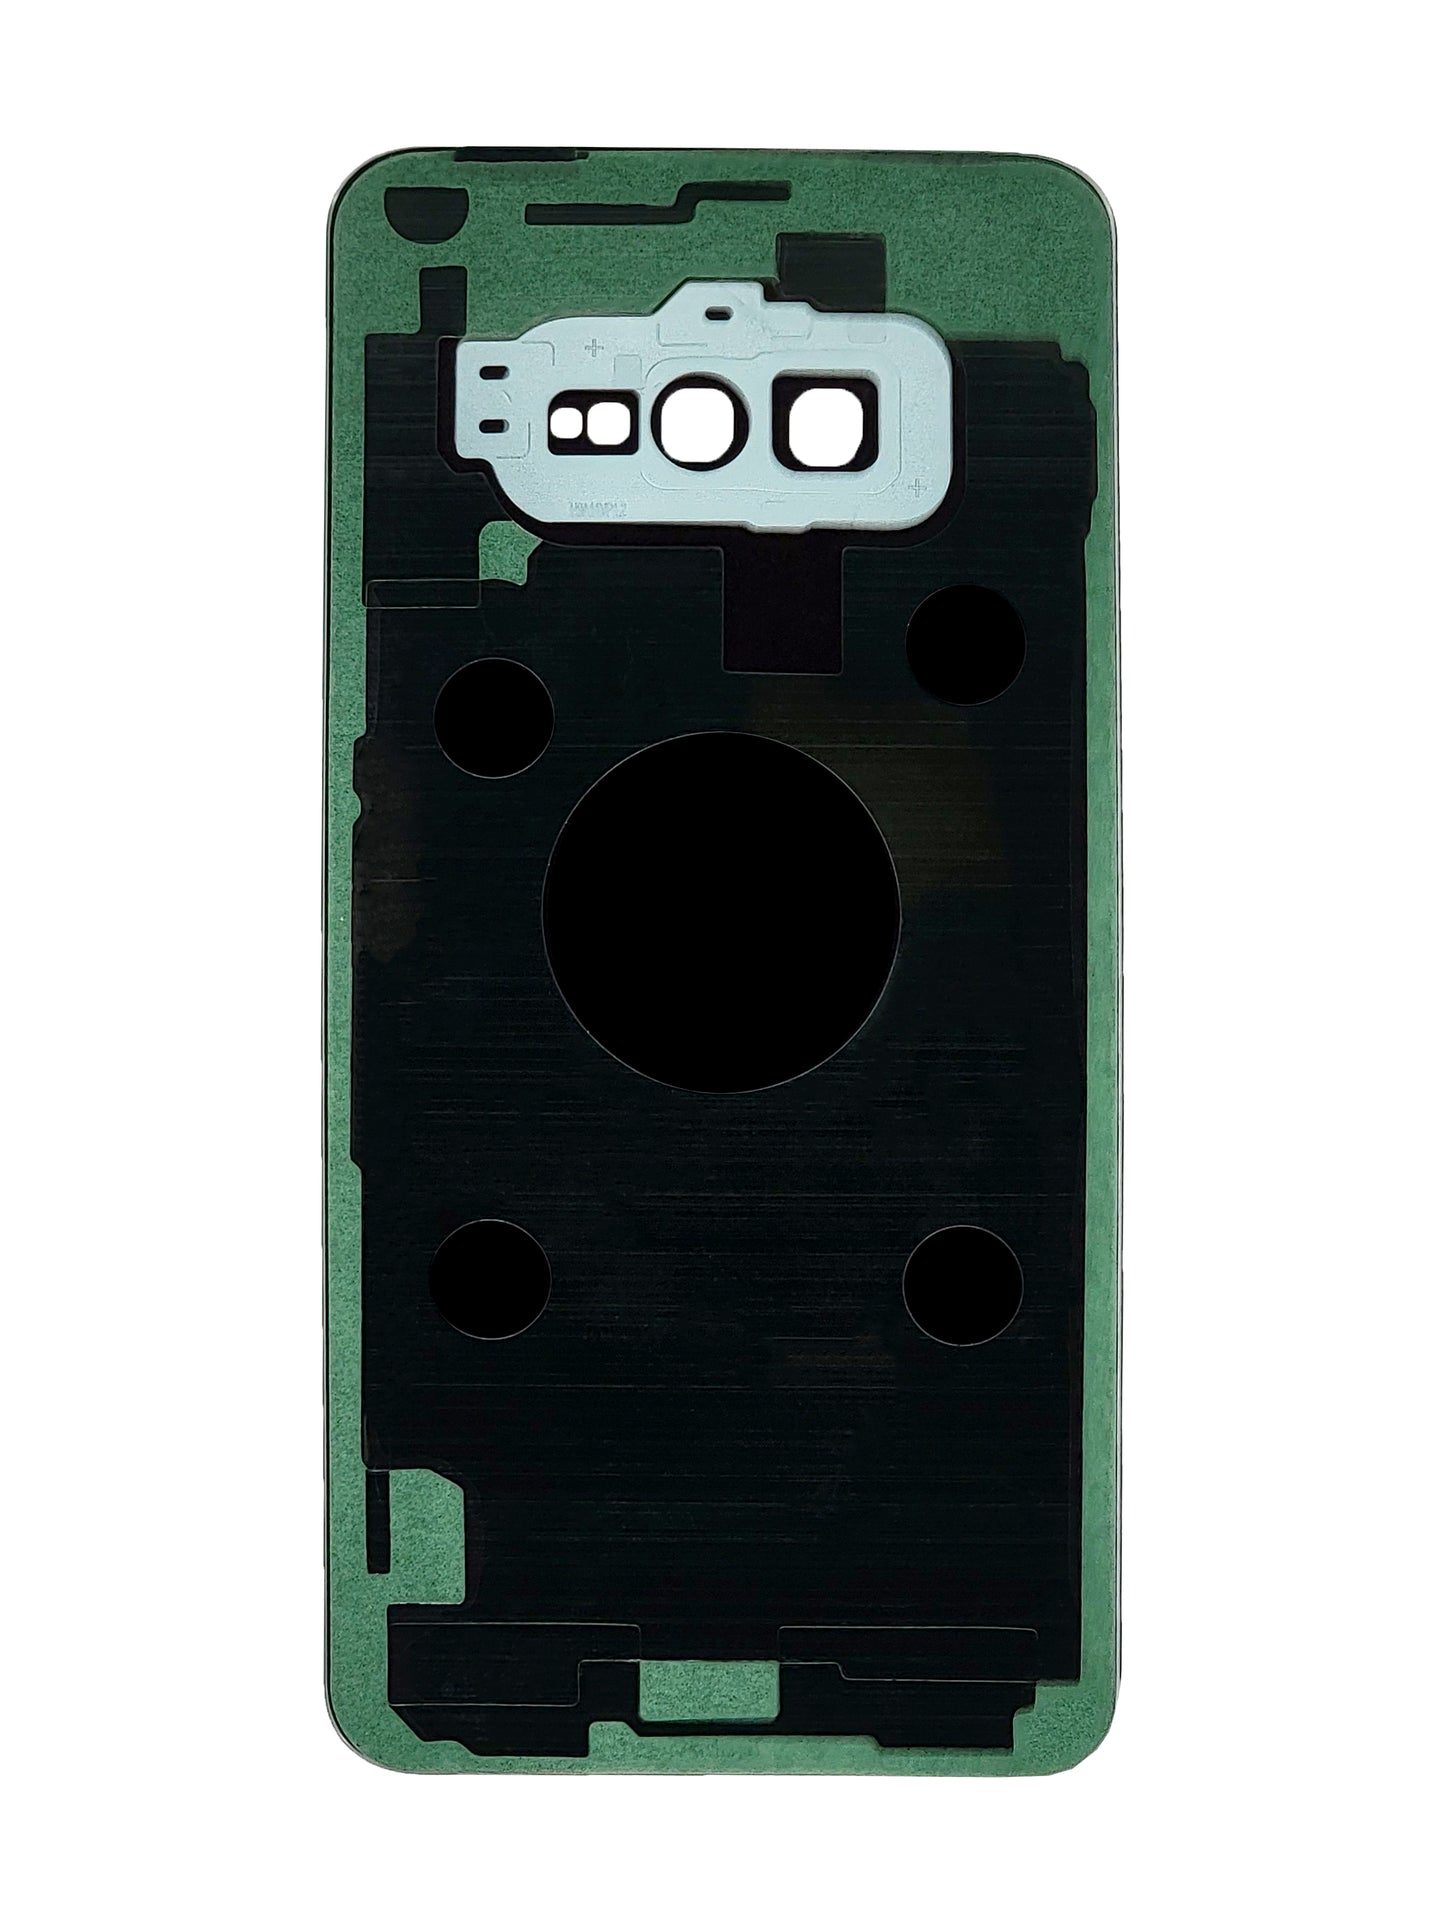 SGS S10e Back Cover (Green)